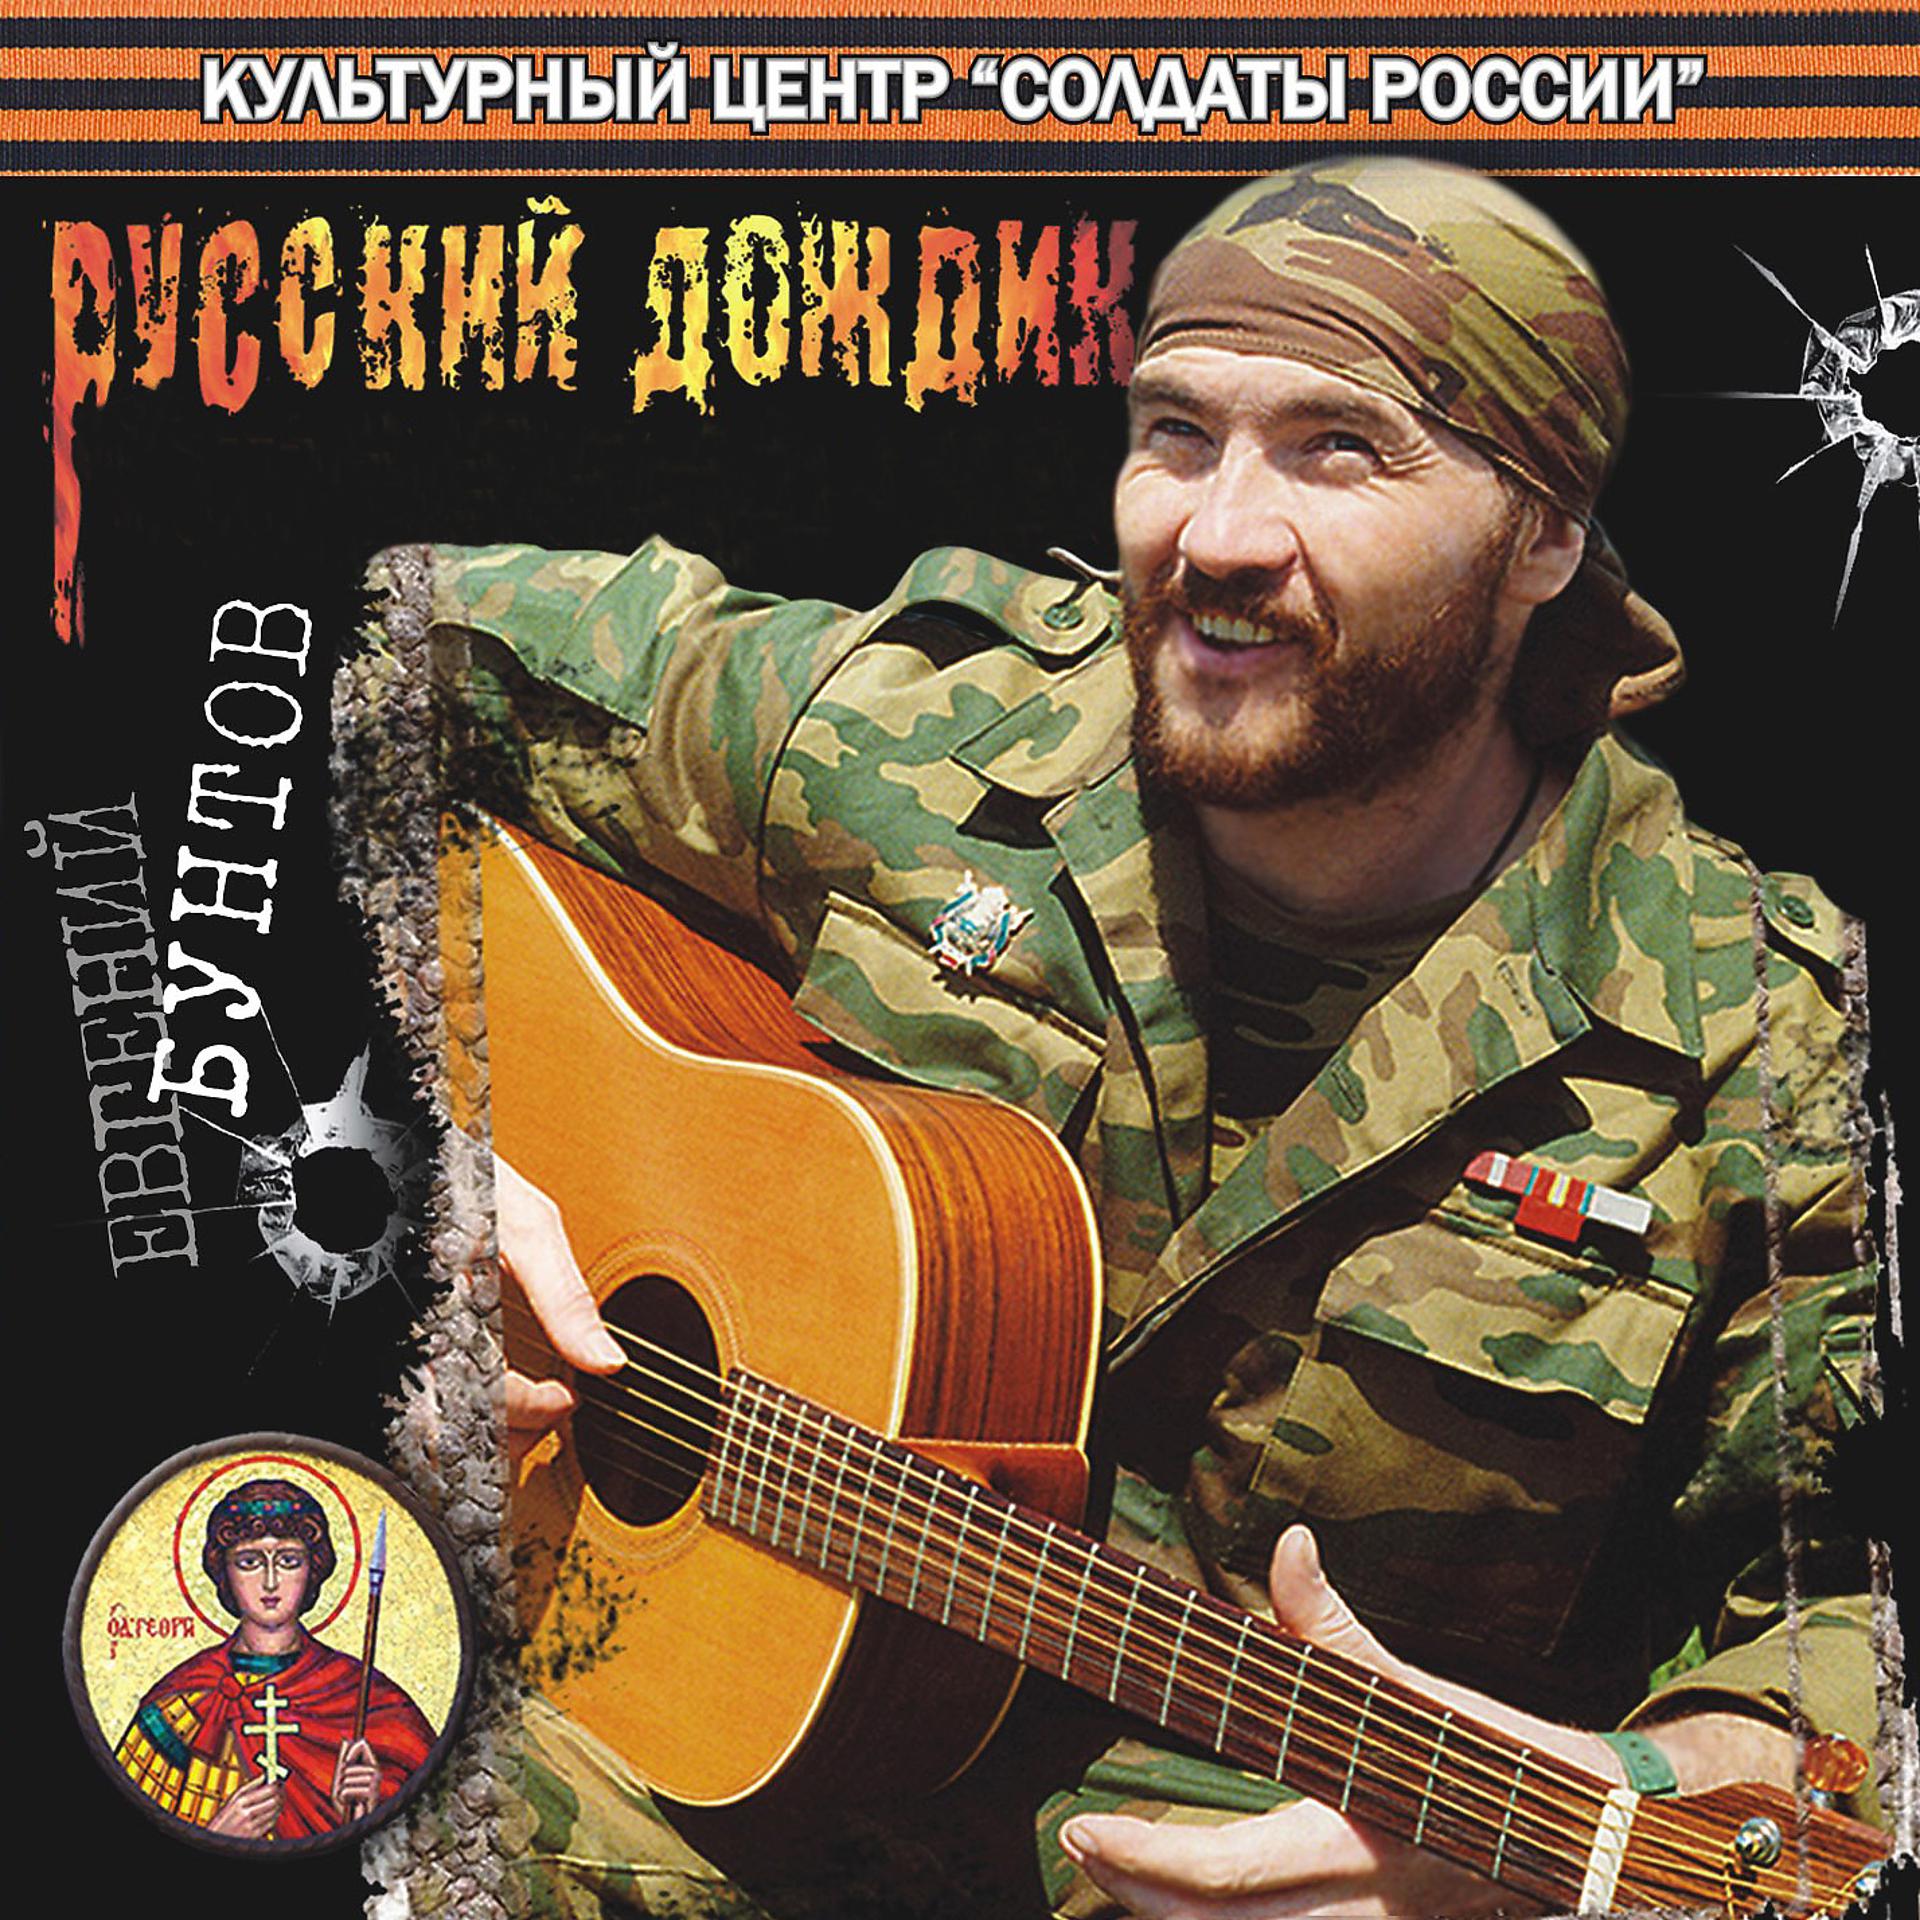 Певцы про Чечню военные. Песни про чеченскую войну. Певцы на войне. Военный исполнитель.